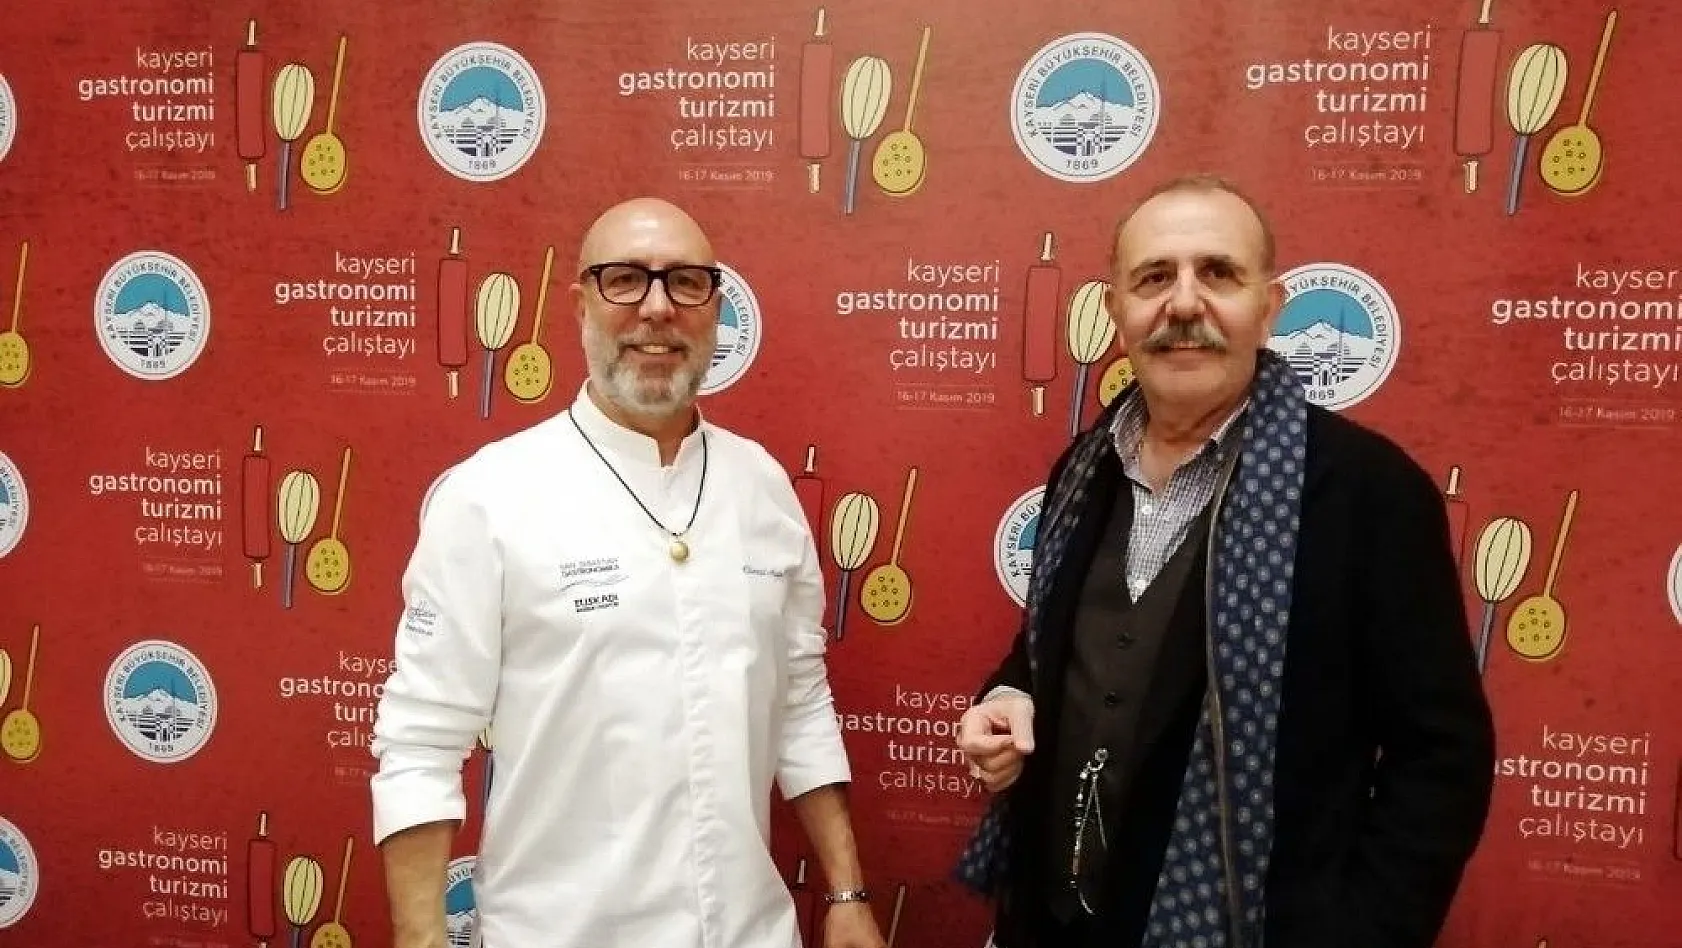 'Kayseri Gastronomi Çalıştayı'na ünlü şefler damga vurdu
